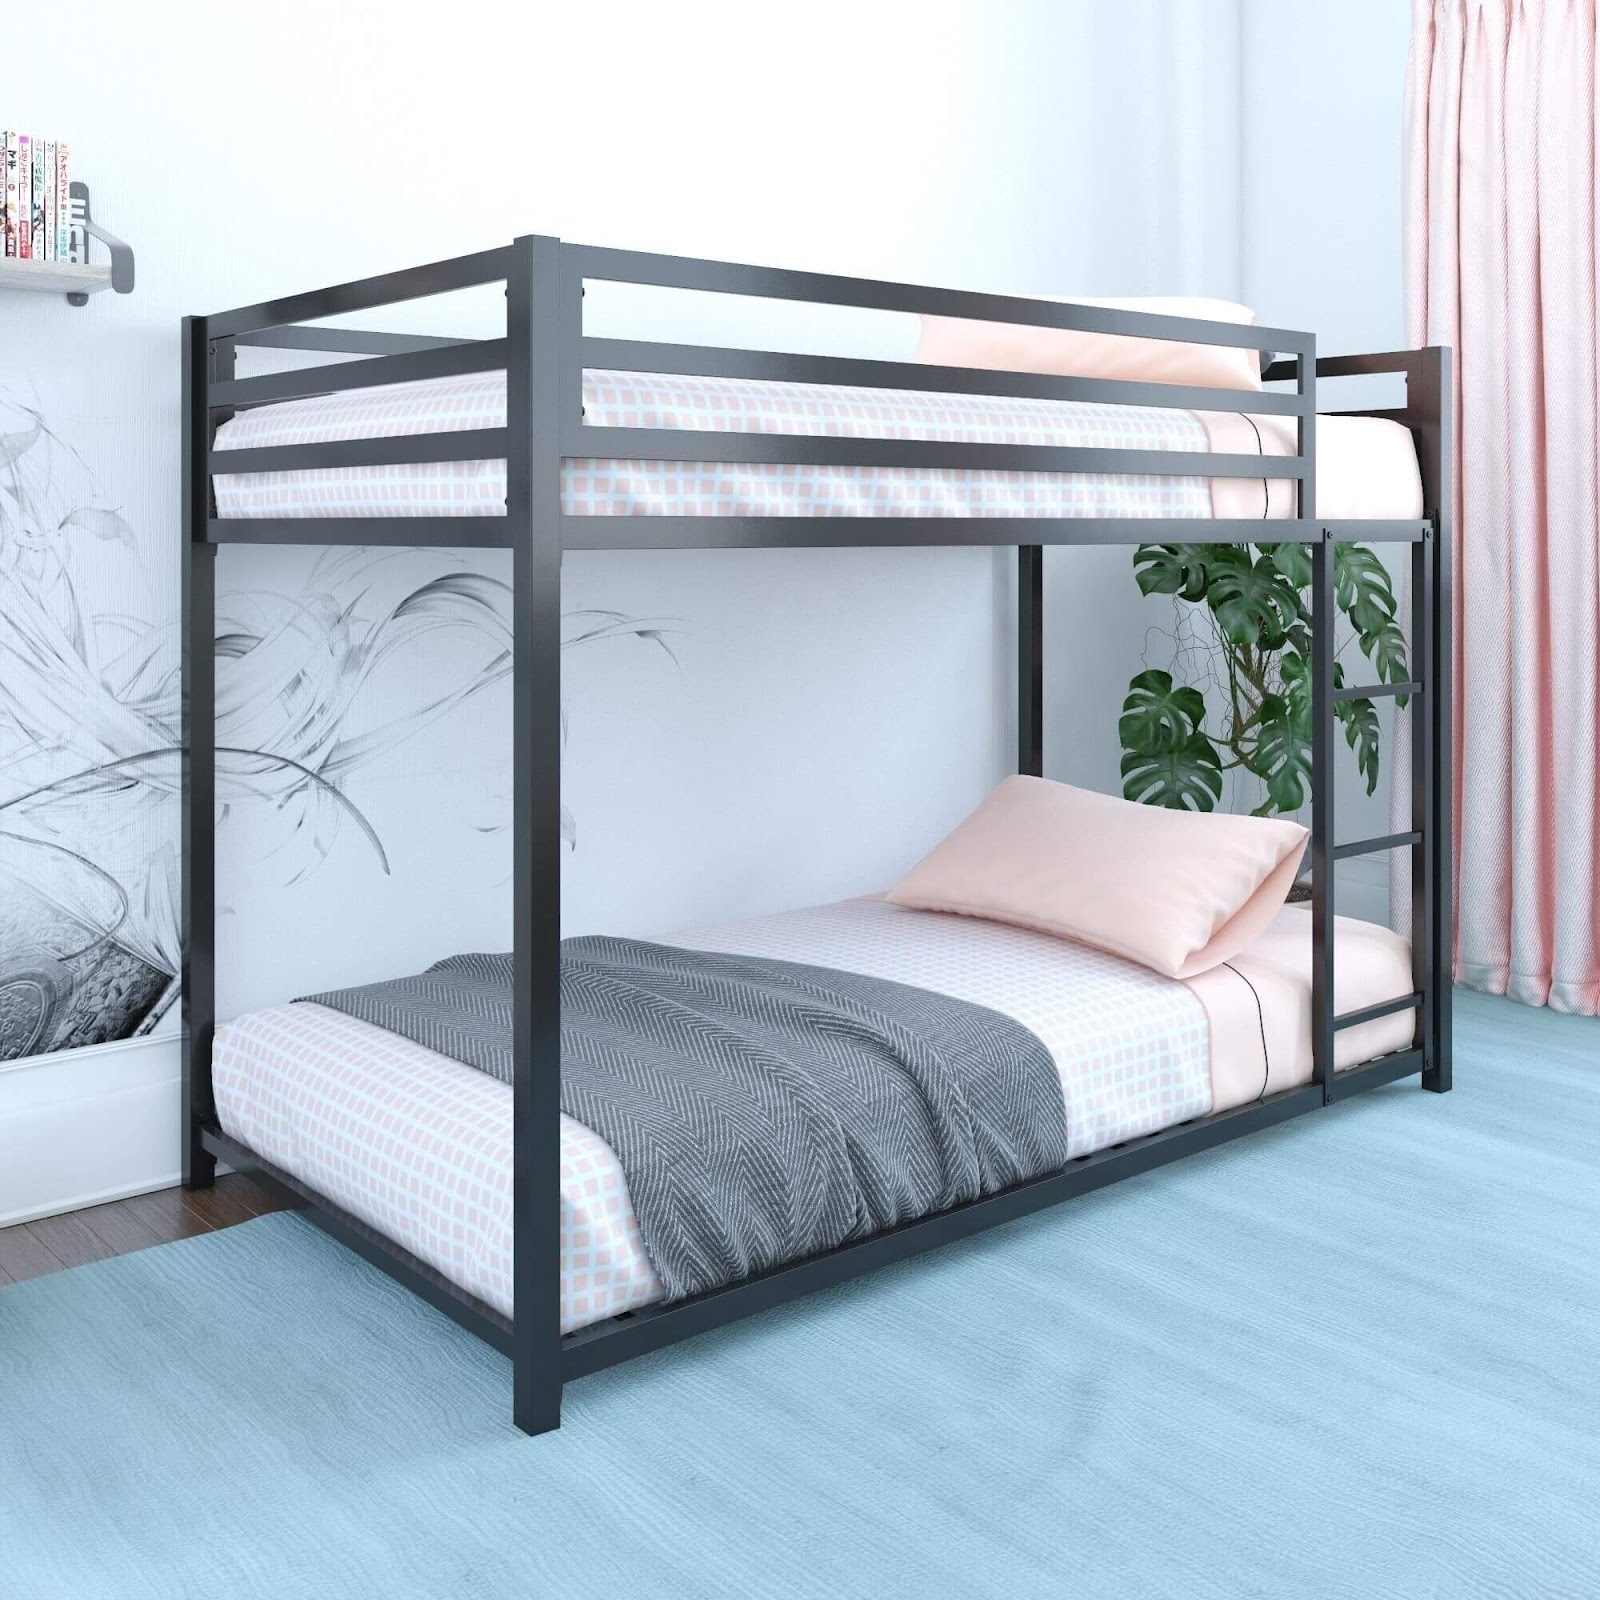 20+ mẫu giường tầng đẹp giá rẻ được lựa chọn nhiều nhất - Vua Nệm